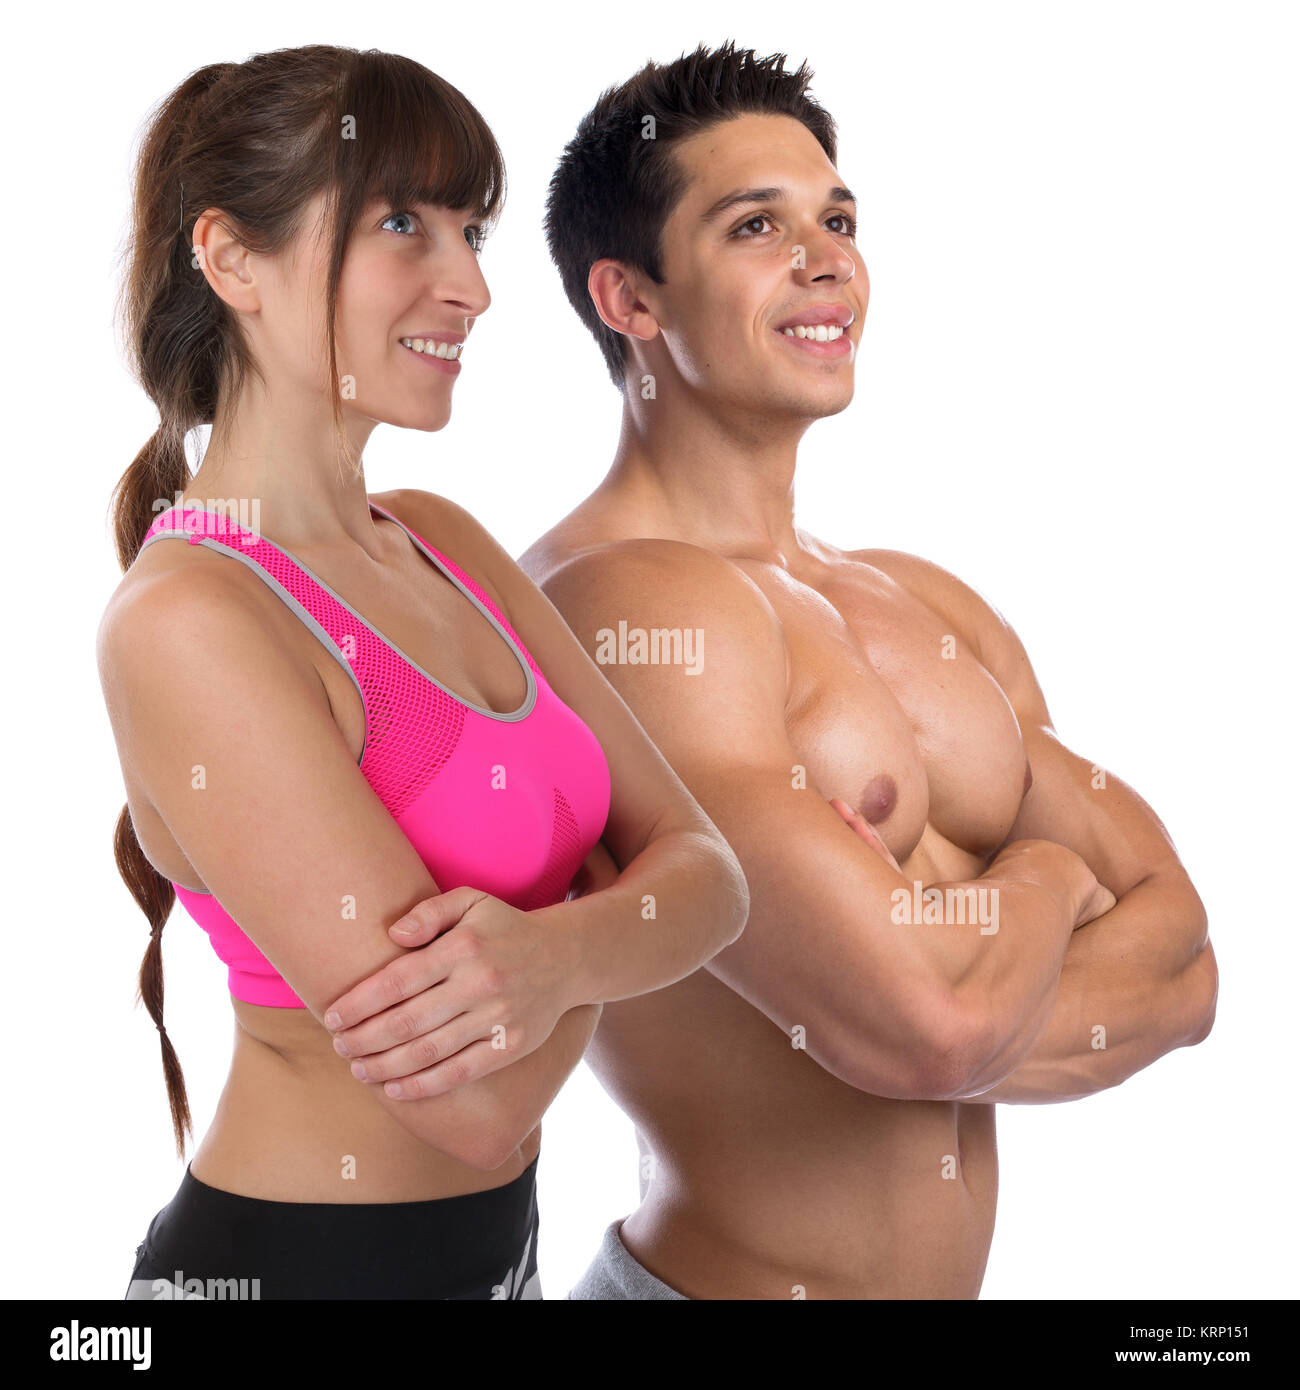 Fitness uomo donna bodybuilder bodybuilding muscoli body building hard look giovane muscolare taglio verso l'alto Foto Stock